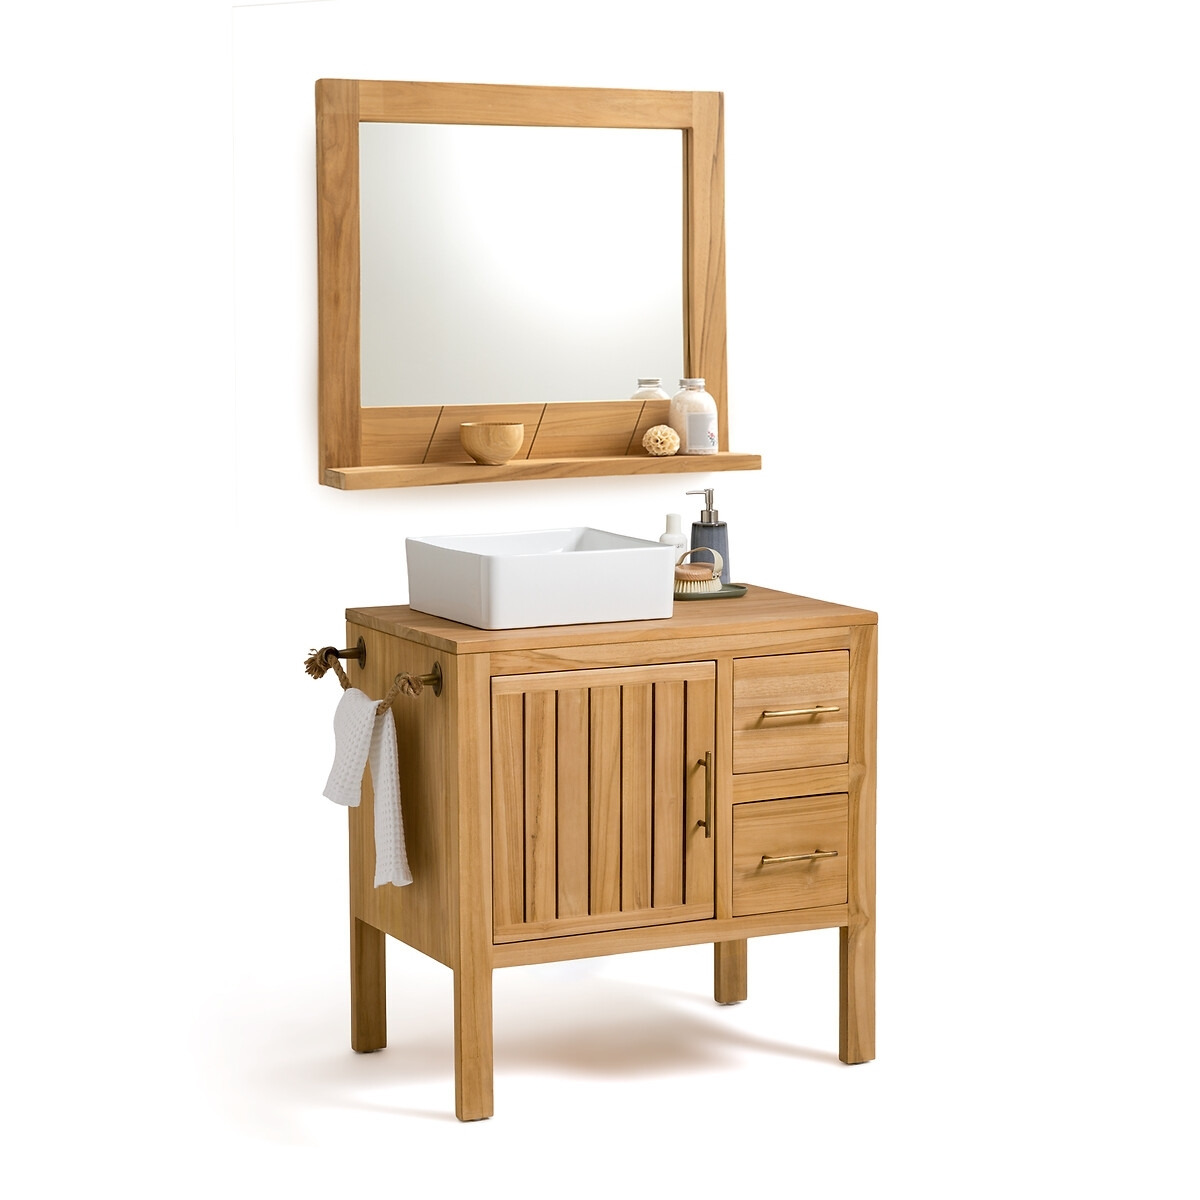 Capti 80cm Solid Teak Bathroom Mirror - image 1